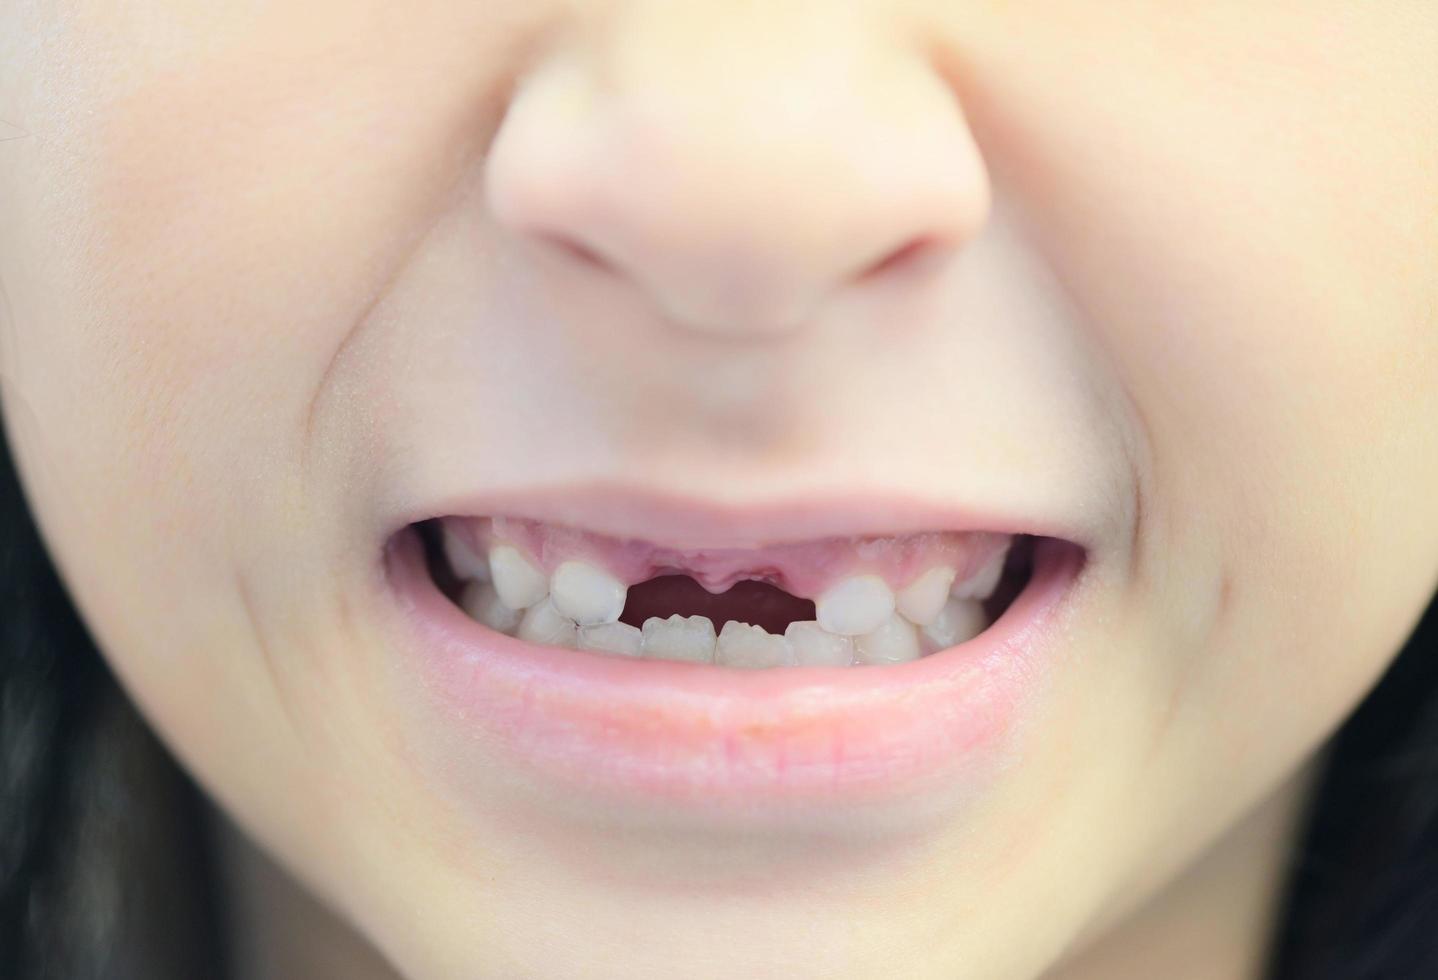 dientes de leche perdidos - diente de leche perdido, cara sonriente de una niña, dientes de leche de pérdida de dientes, su diente de leche se cayó y su diente permanente en crecimiento en el concepto de problemas de salud dental de boca abierta foto